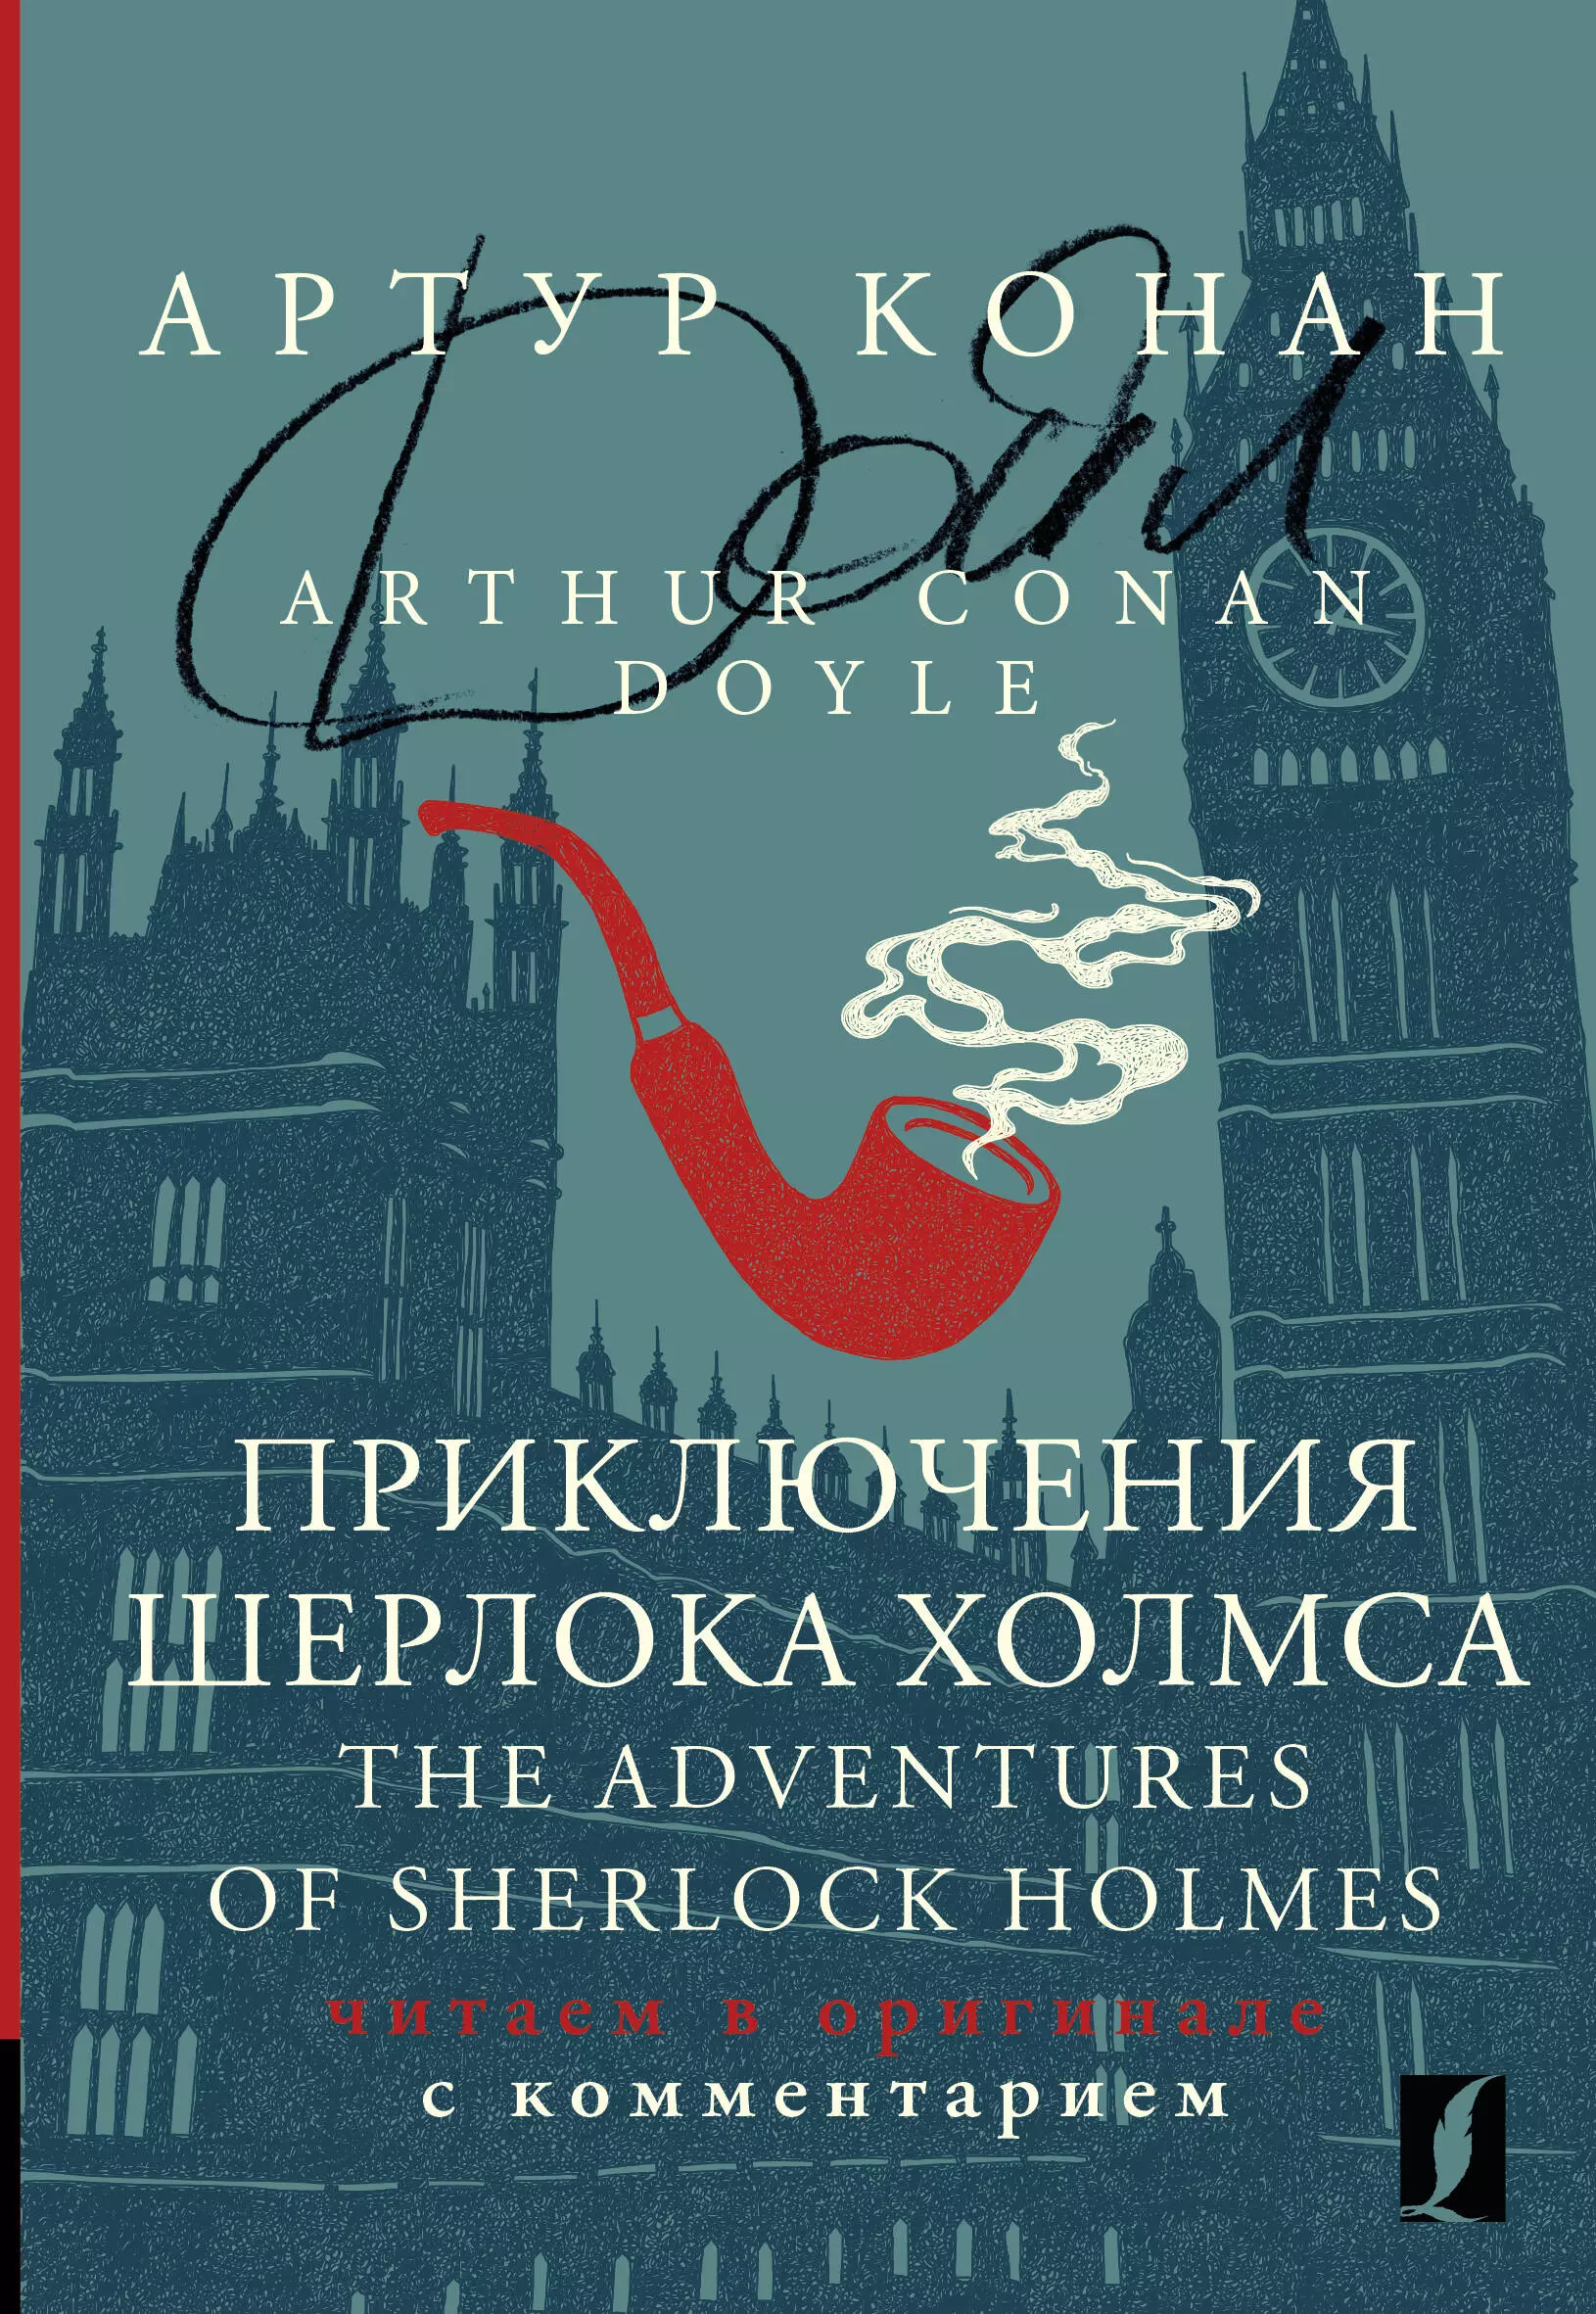 дойл артур конан the adventures of sherlock holmes v приключения шерлока холмса v на англ яз Дойл Артур Конан Приключения Шерлока Холмса / The Adventures of Sherlock Holmes: читаем в оригинале с комментарием